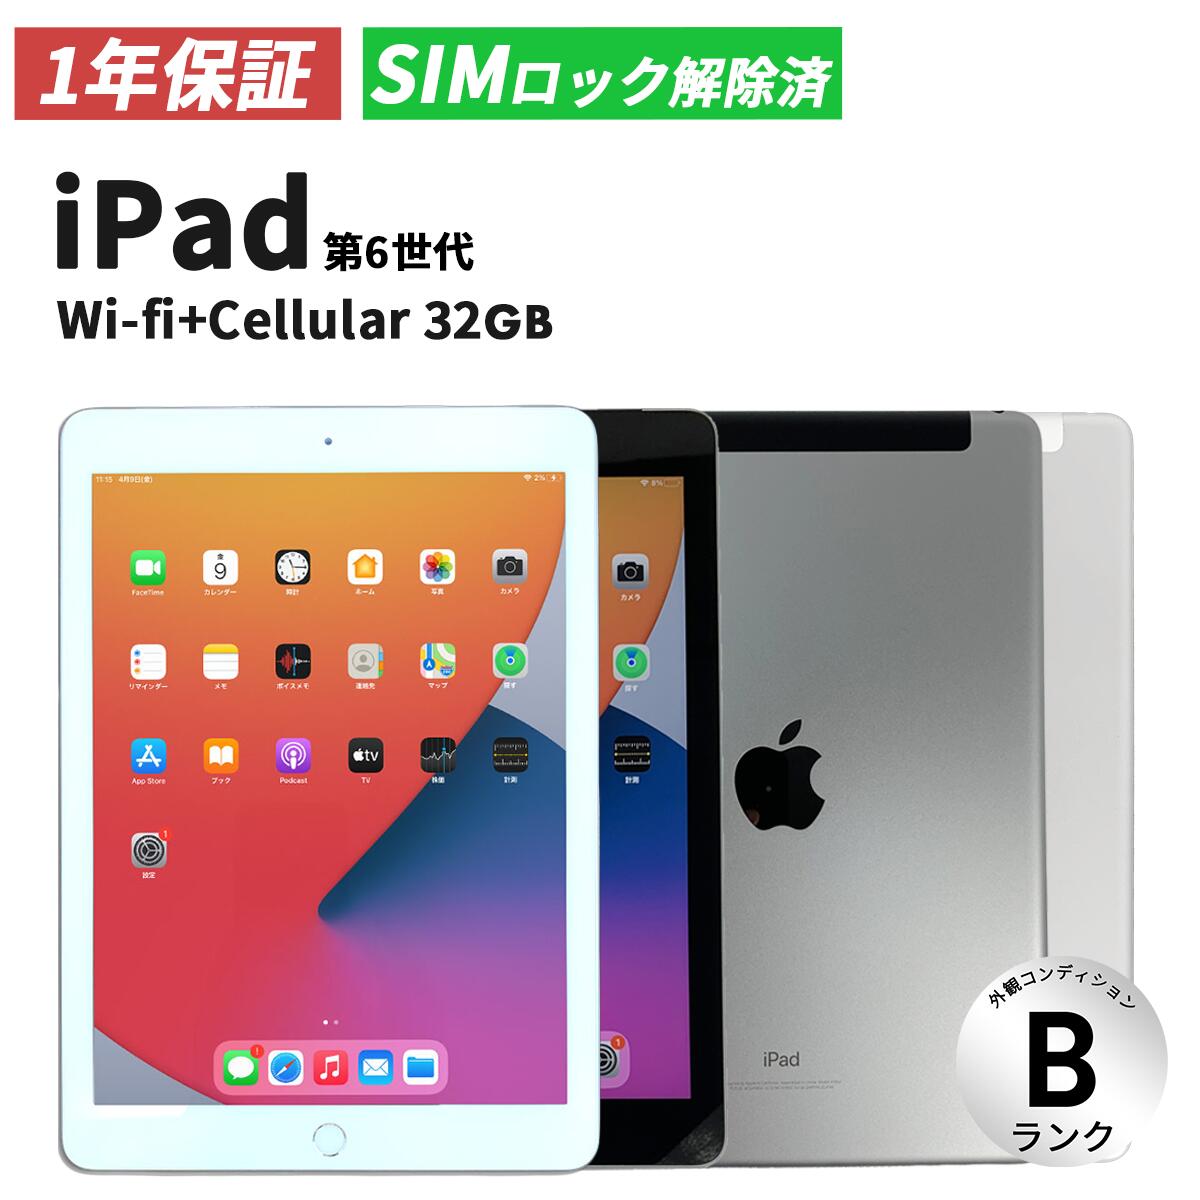 【SIMロック解除済み】apple iPad 第6世代 2018年モデル Wifi+cellular 32GB Space Gray Silver  ネットワーク利用制限〇 MR6P2J/A【中古・外観Bランク】アップル アイパッド アイパット タブレット wifi ワイファイ 中古ipad 端末 